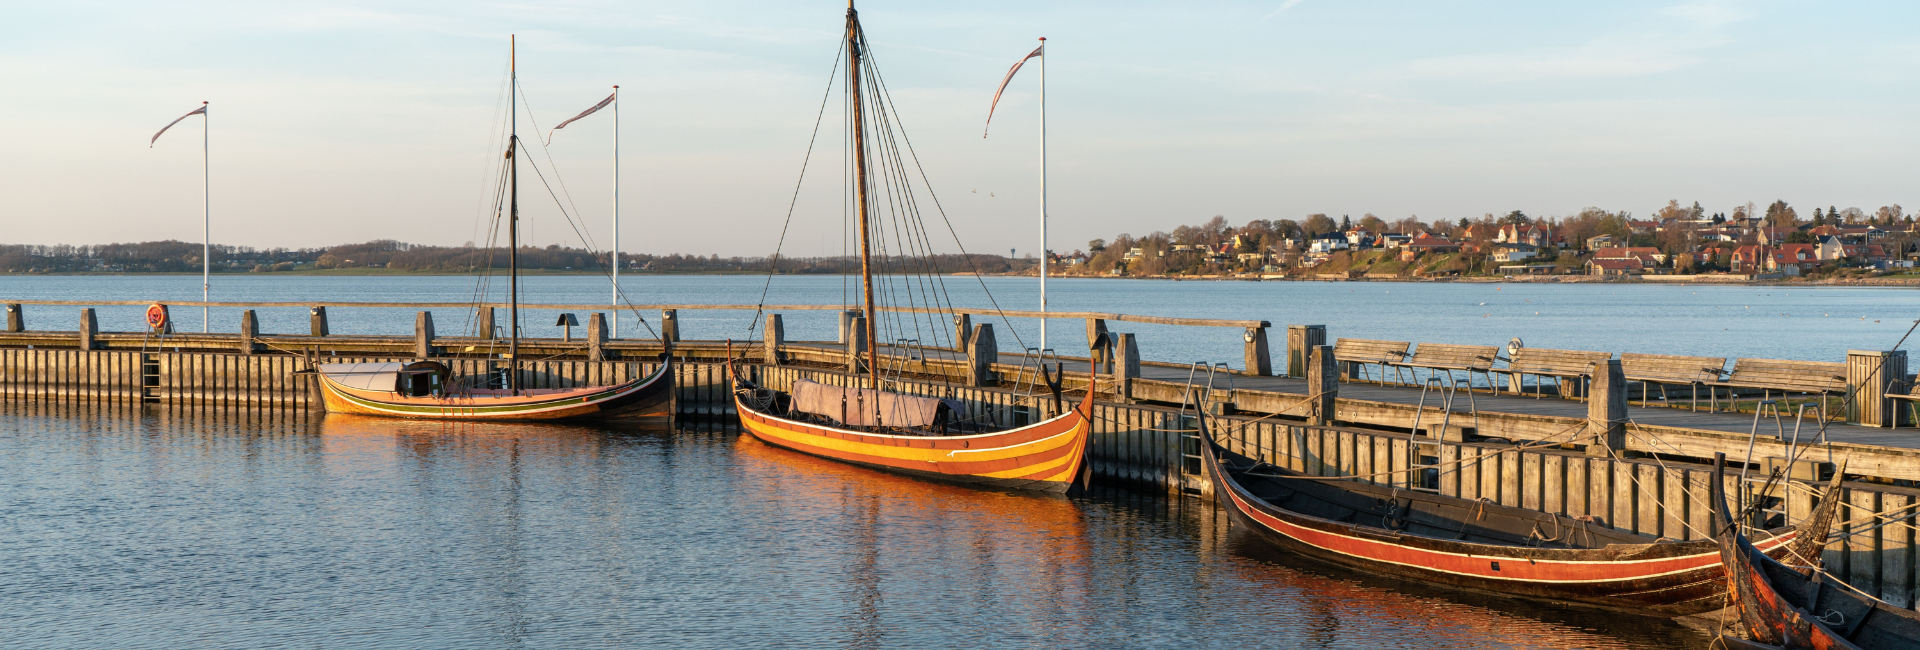 Vikingeskibsmuseet i Roskilde - Roskilde Havn - Museumshavnen